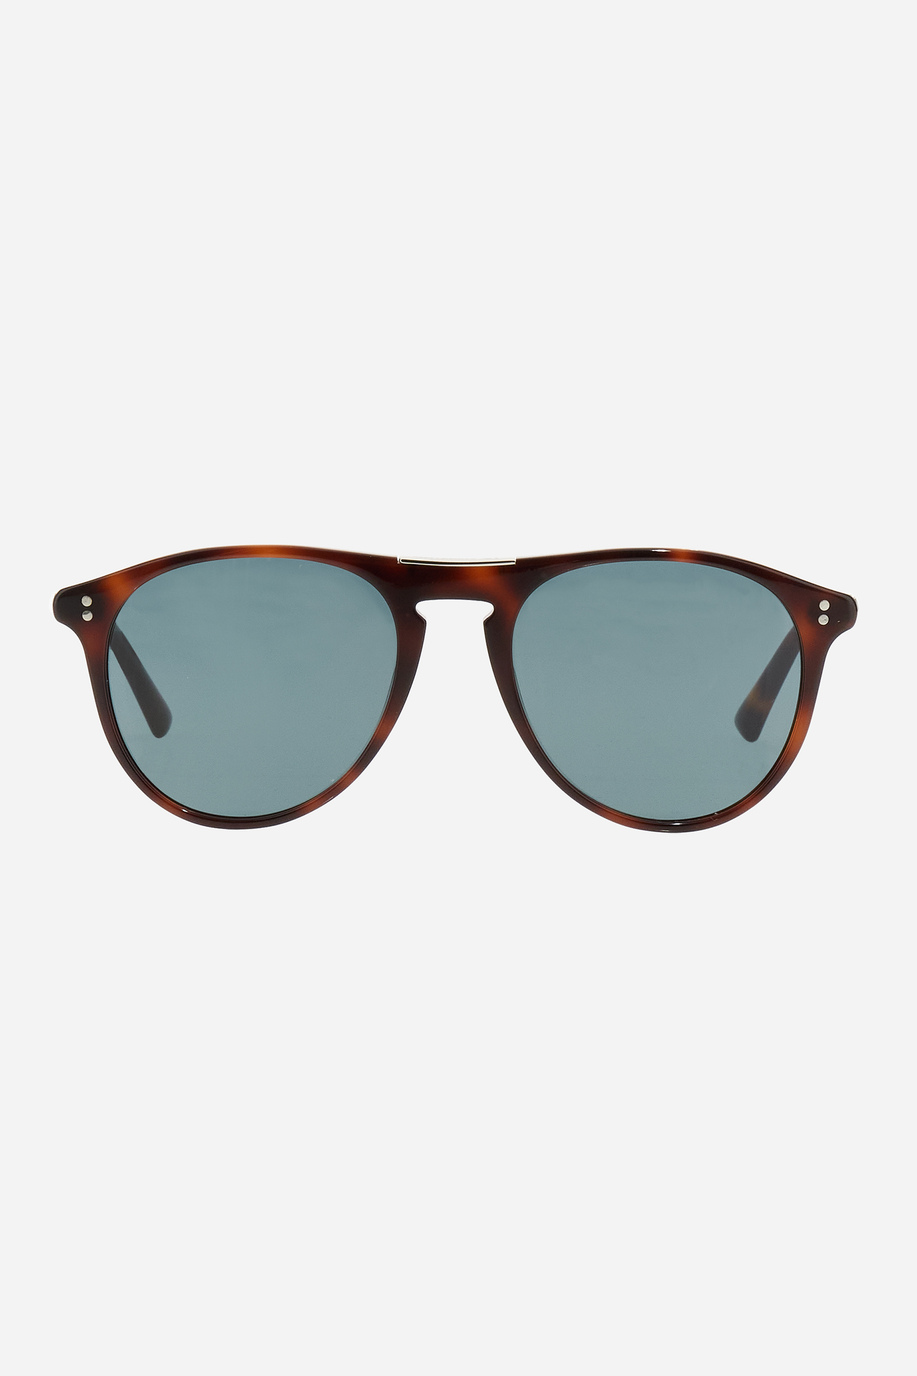 Unisex acetate sunglasses - presale | La Martina - Official Online Shop